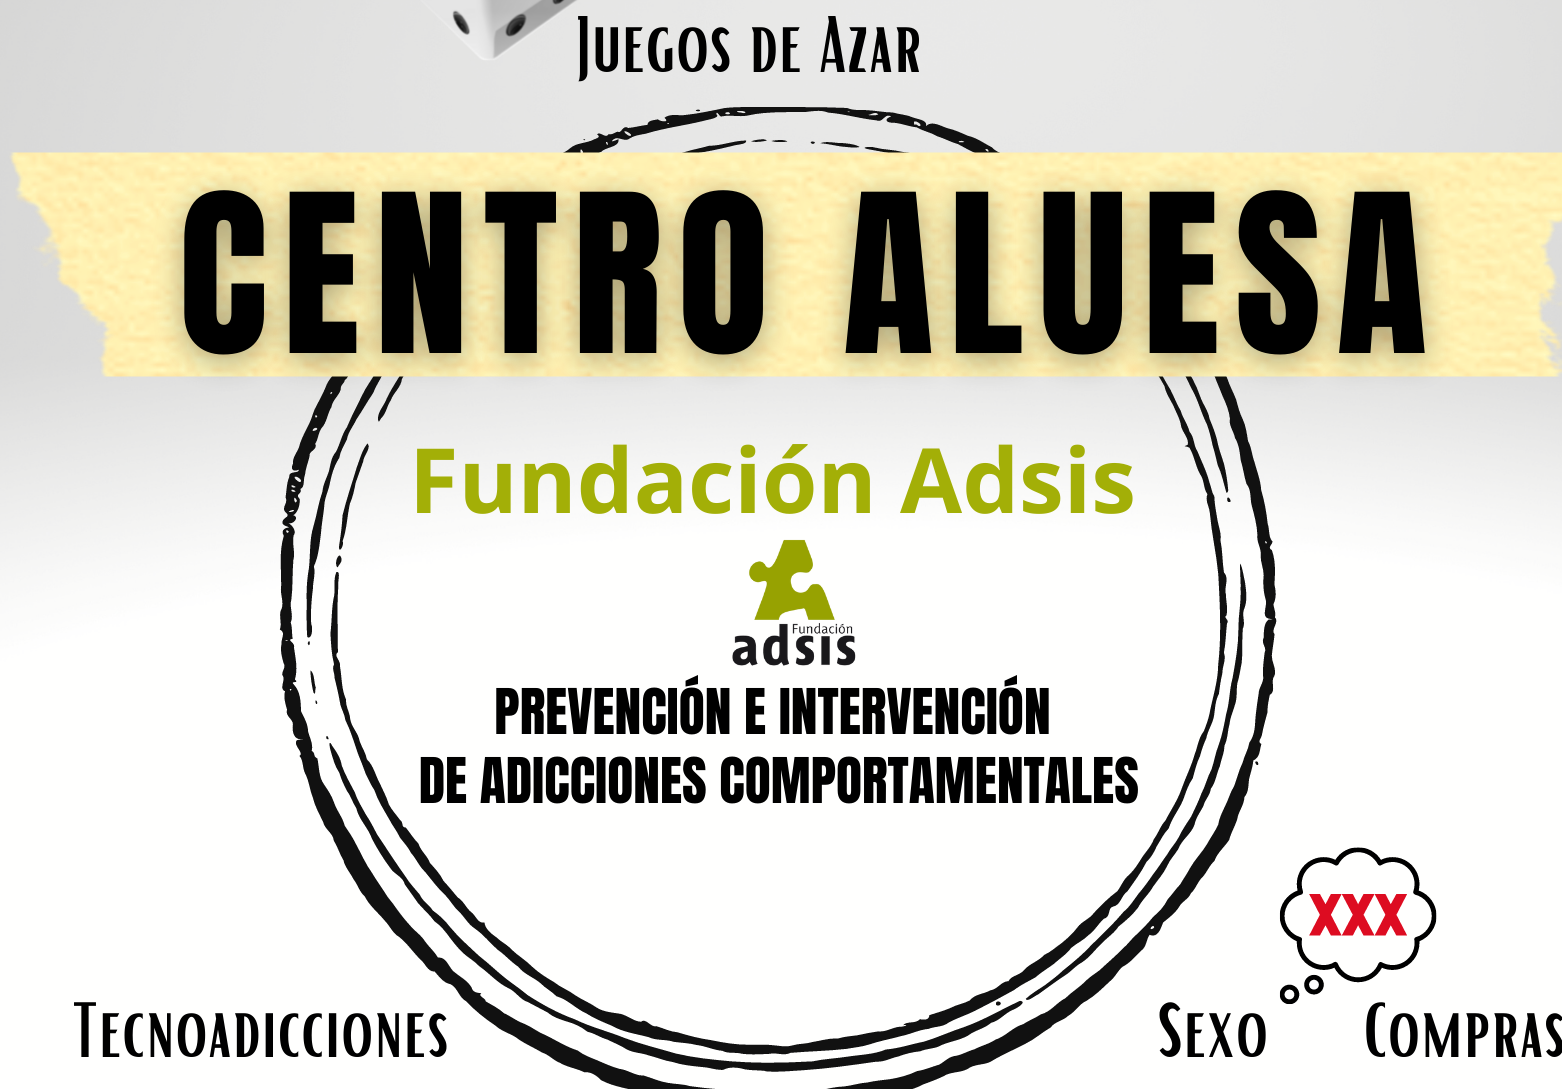 Fundación Adsis Centro Aluesa